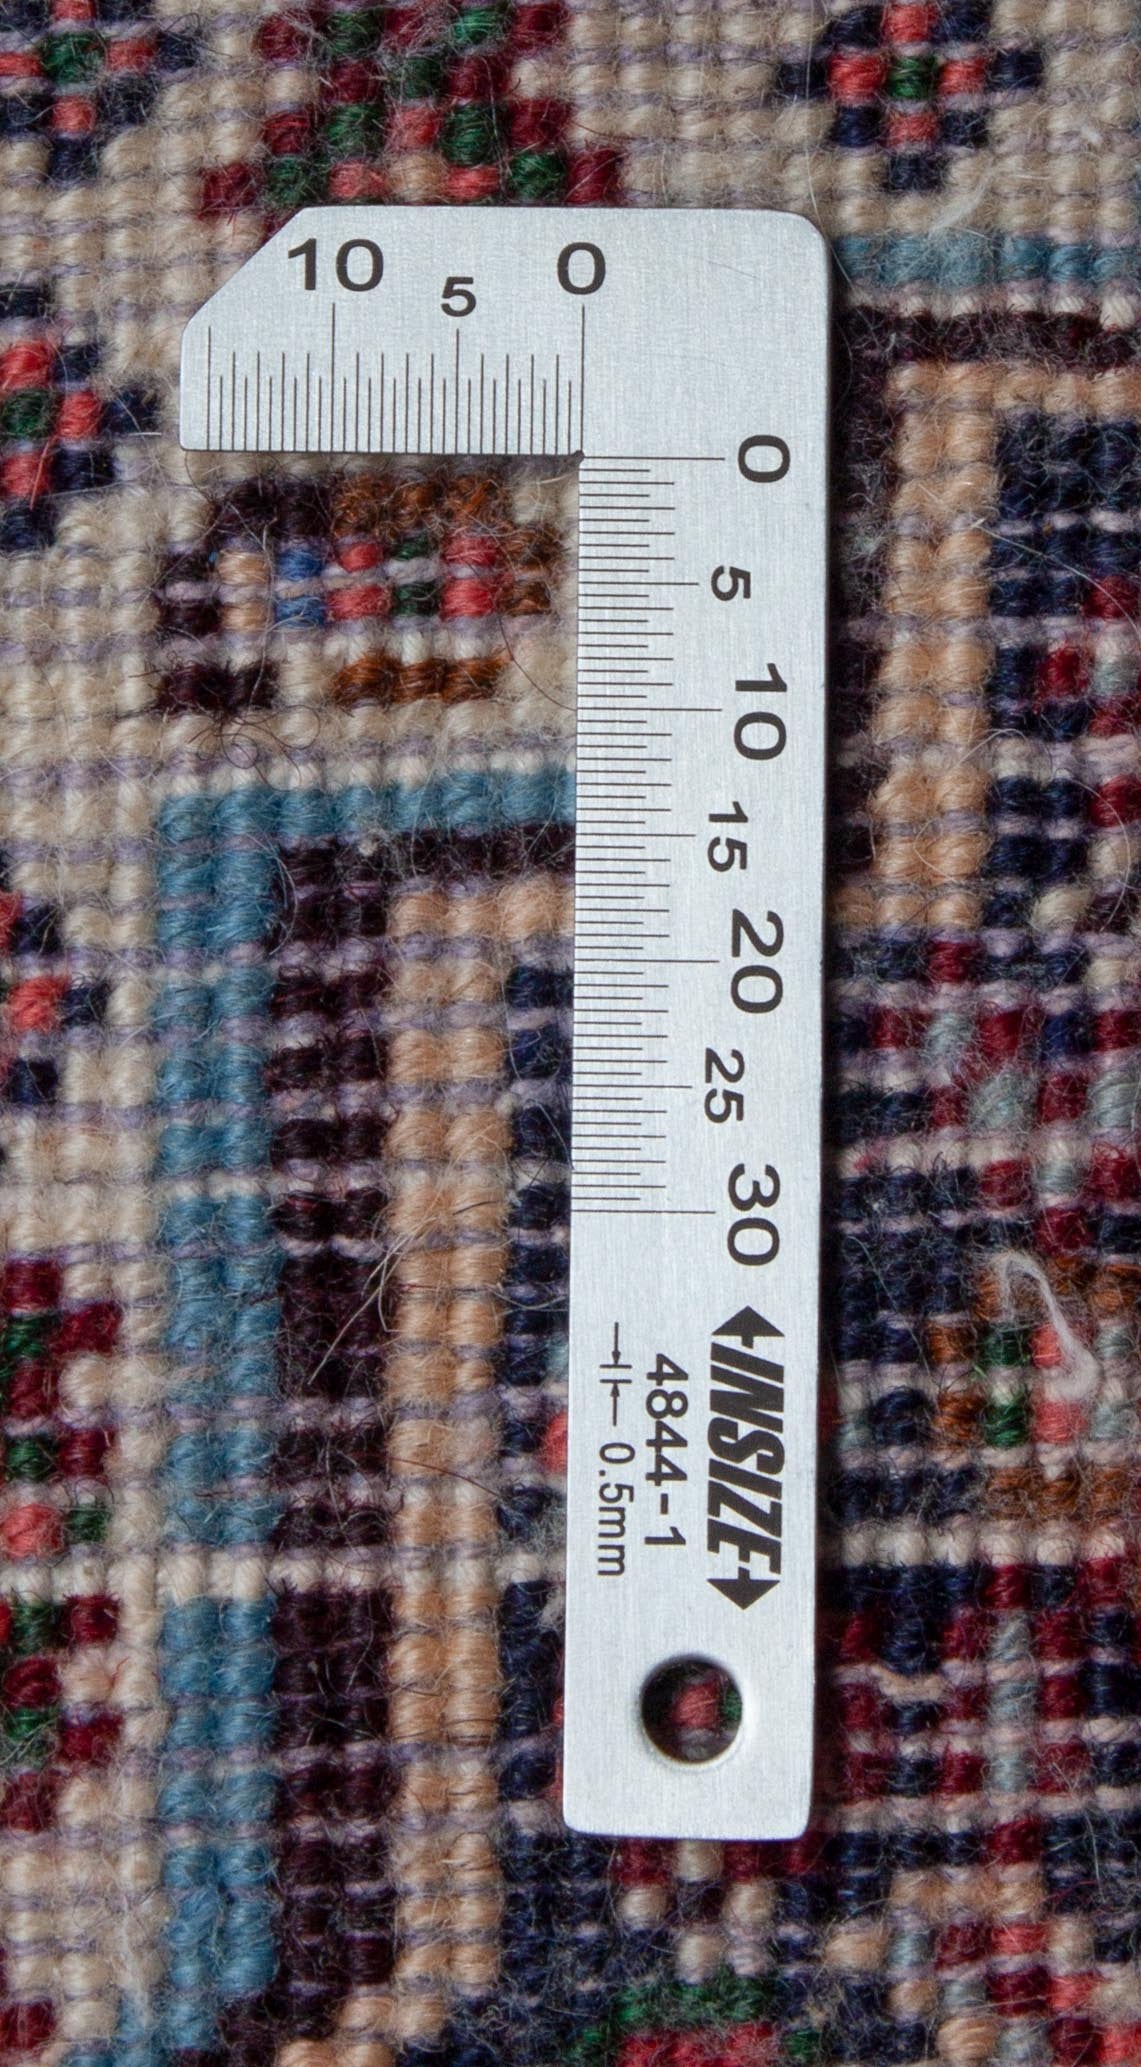 Eine Fotoaufnahme eines Senneh Teppichs.